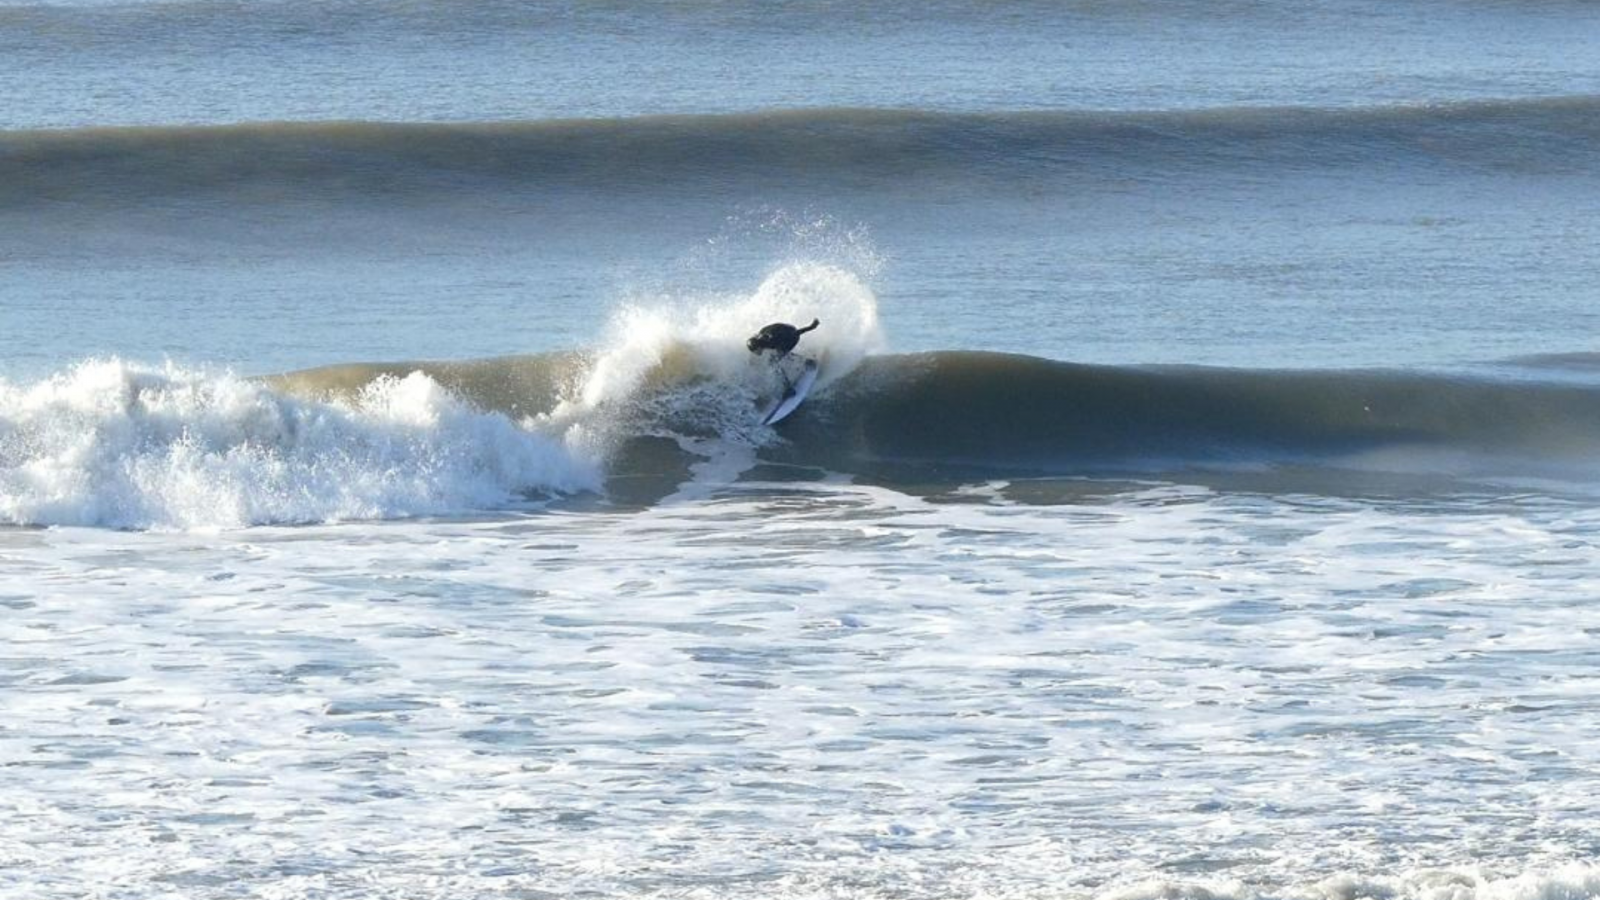 Next Wave-Surfen